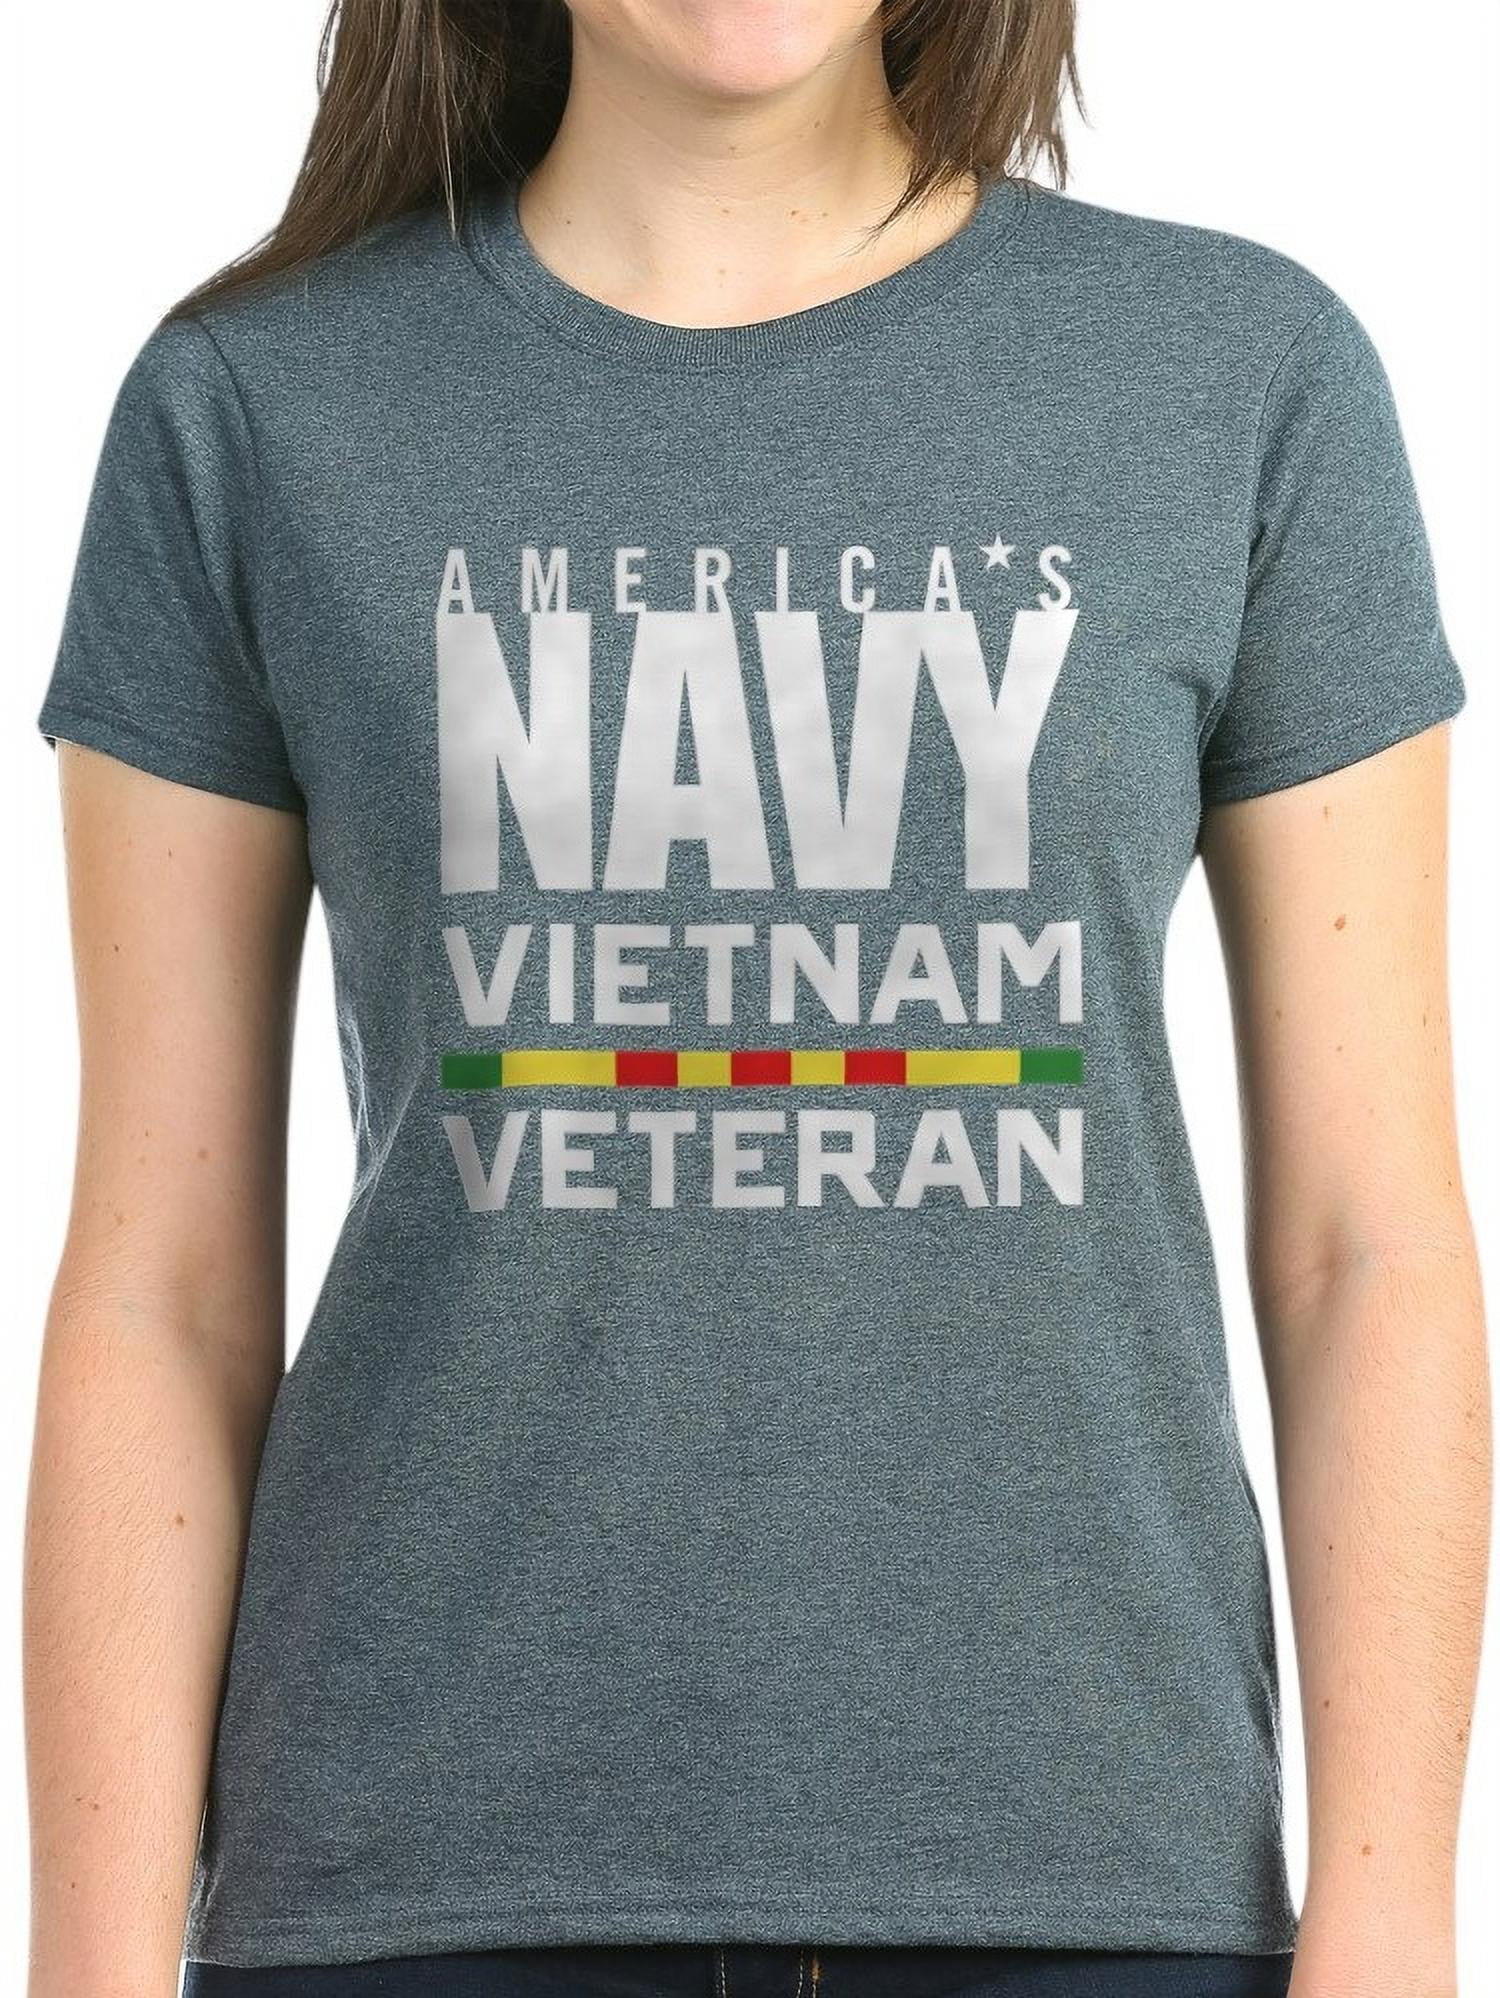 CafePress - America's Navy Vietnam Vetera - Women's Dark T-Shirt ...